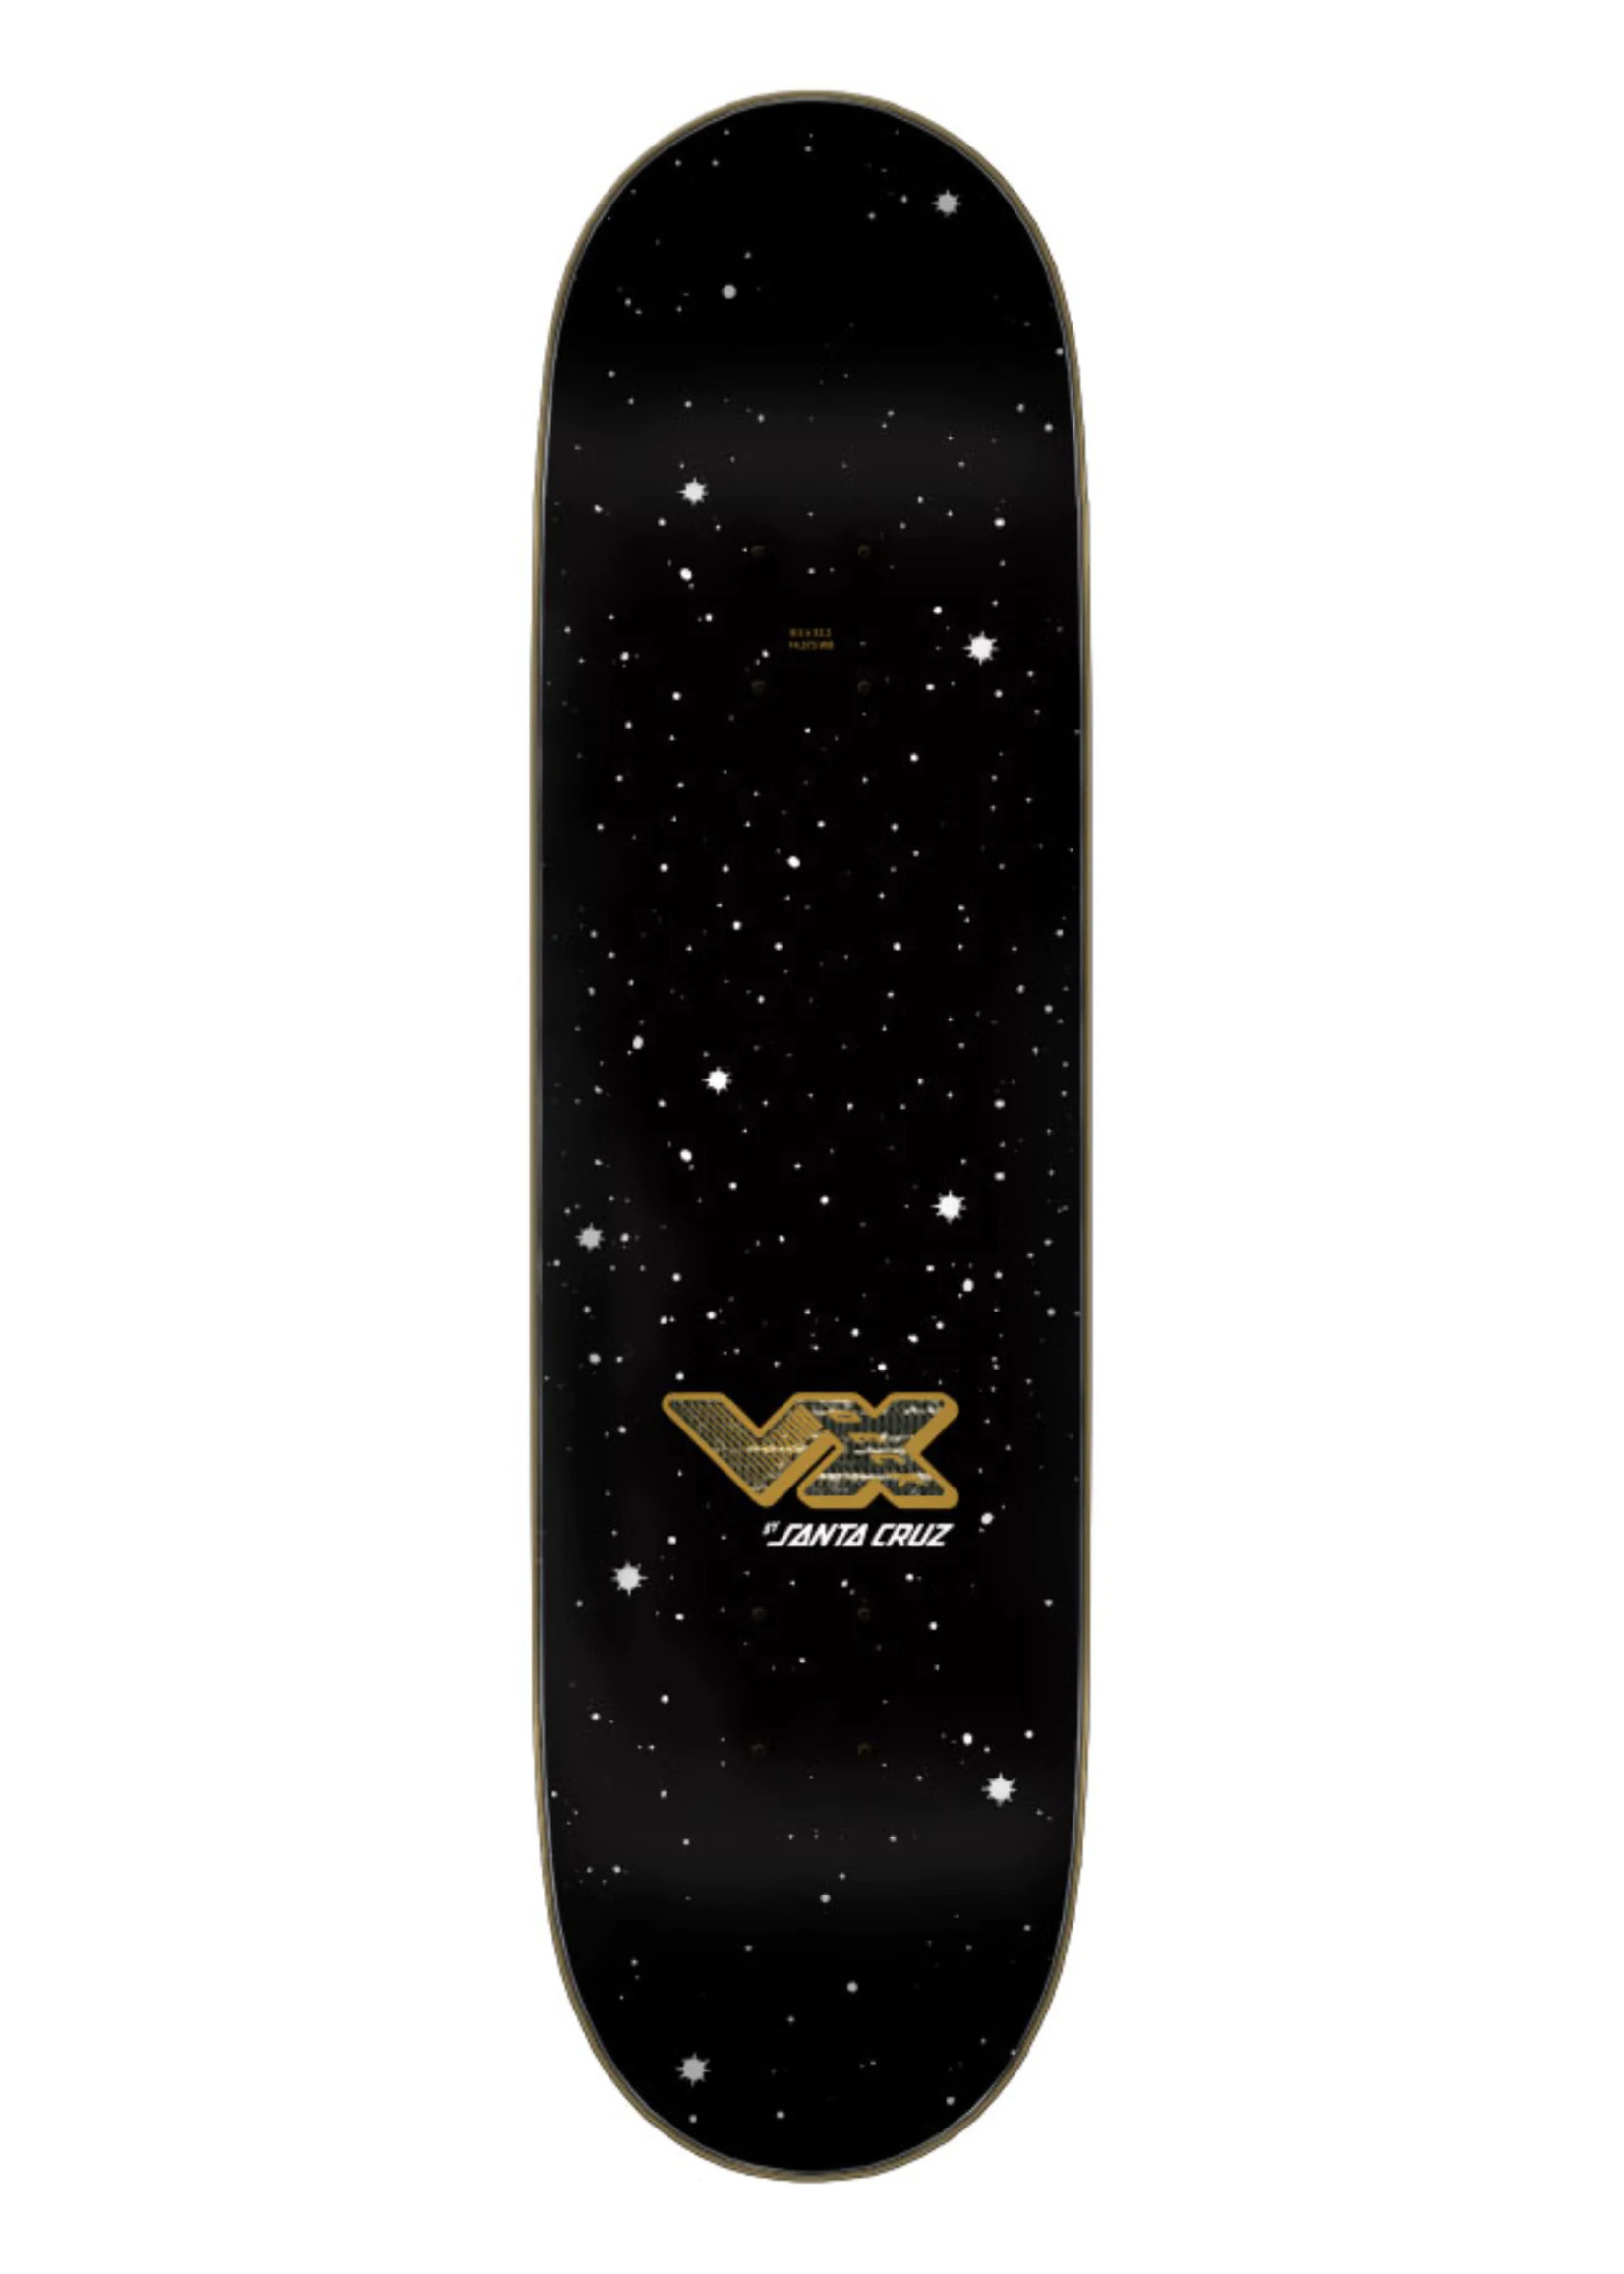 8.5in x 32.2in Wooten Crest VX Deck Santa Cruz Skateboard Deck